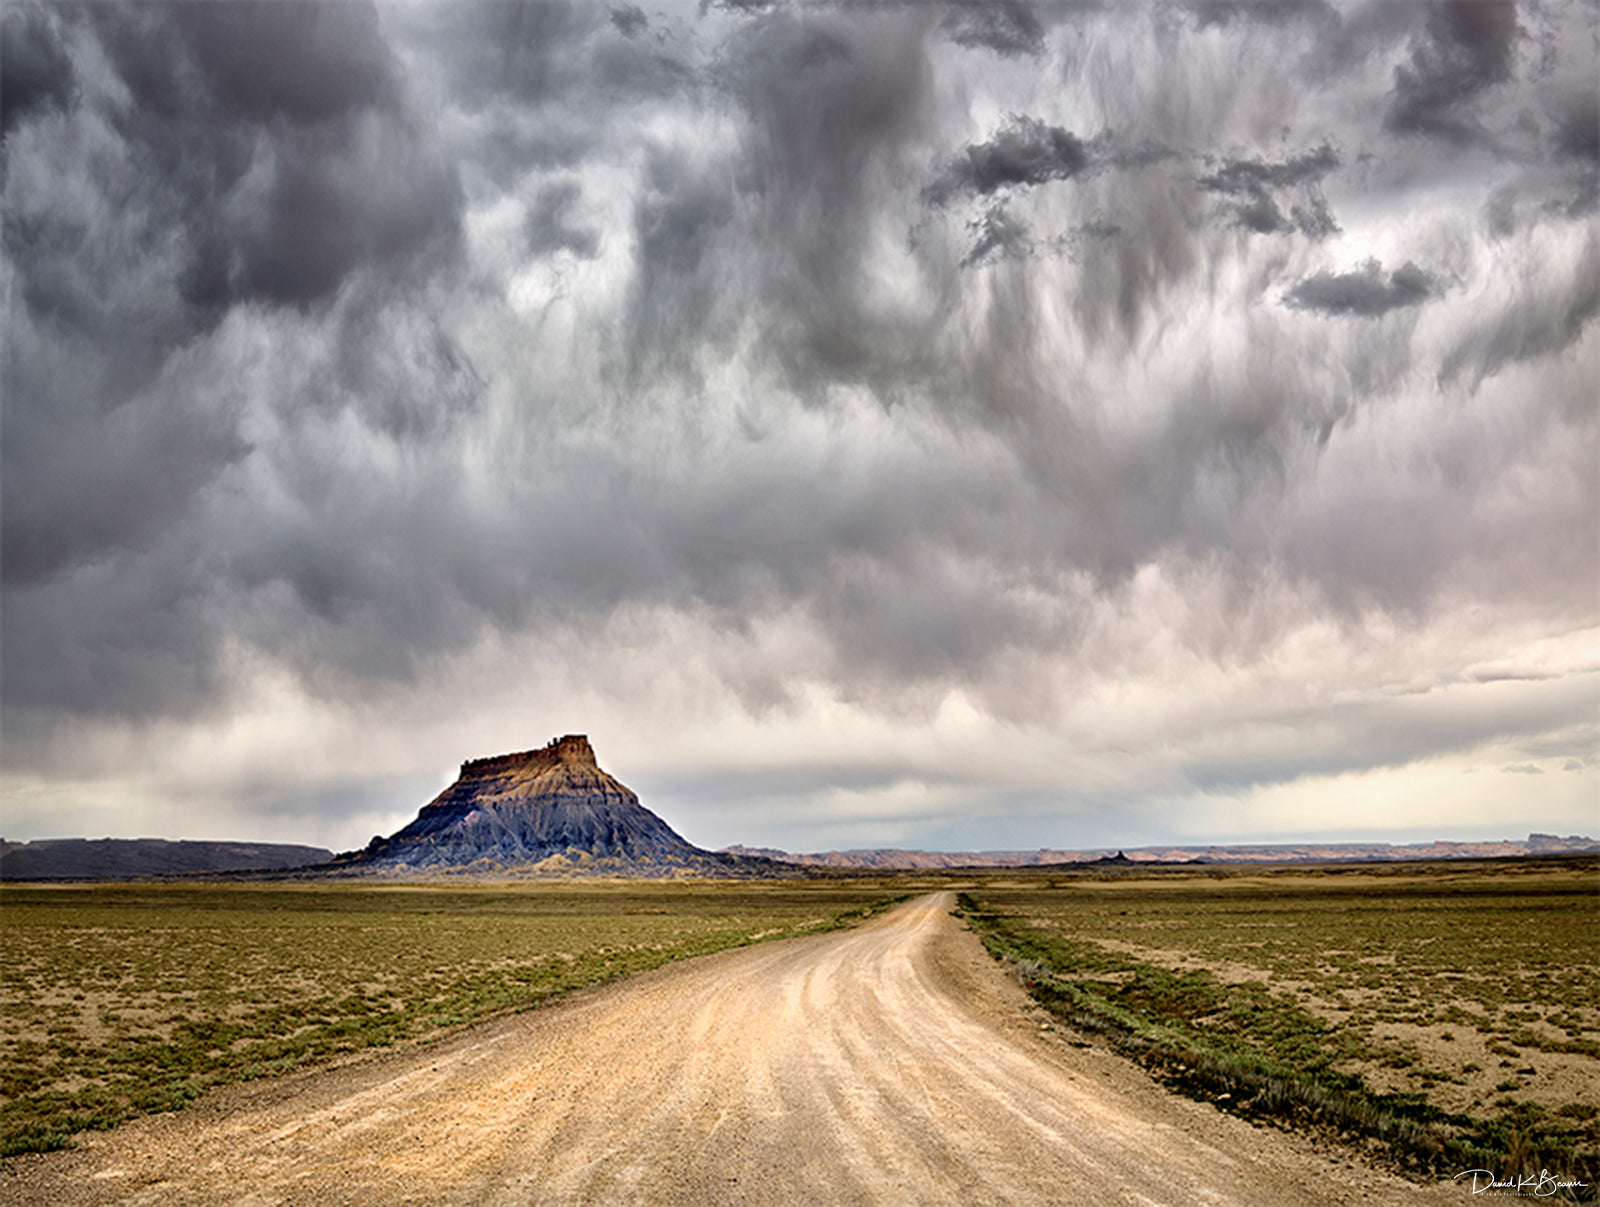 empty highway in desert with dark, grey, cloudy skies.